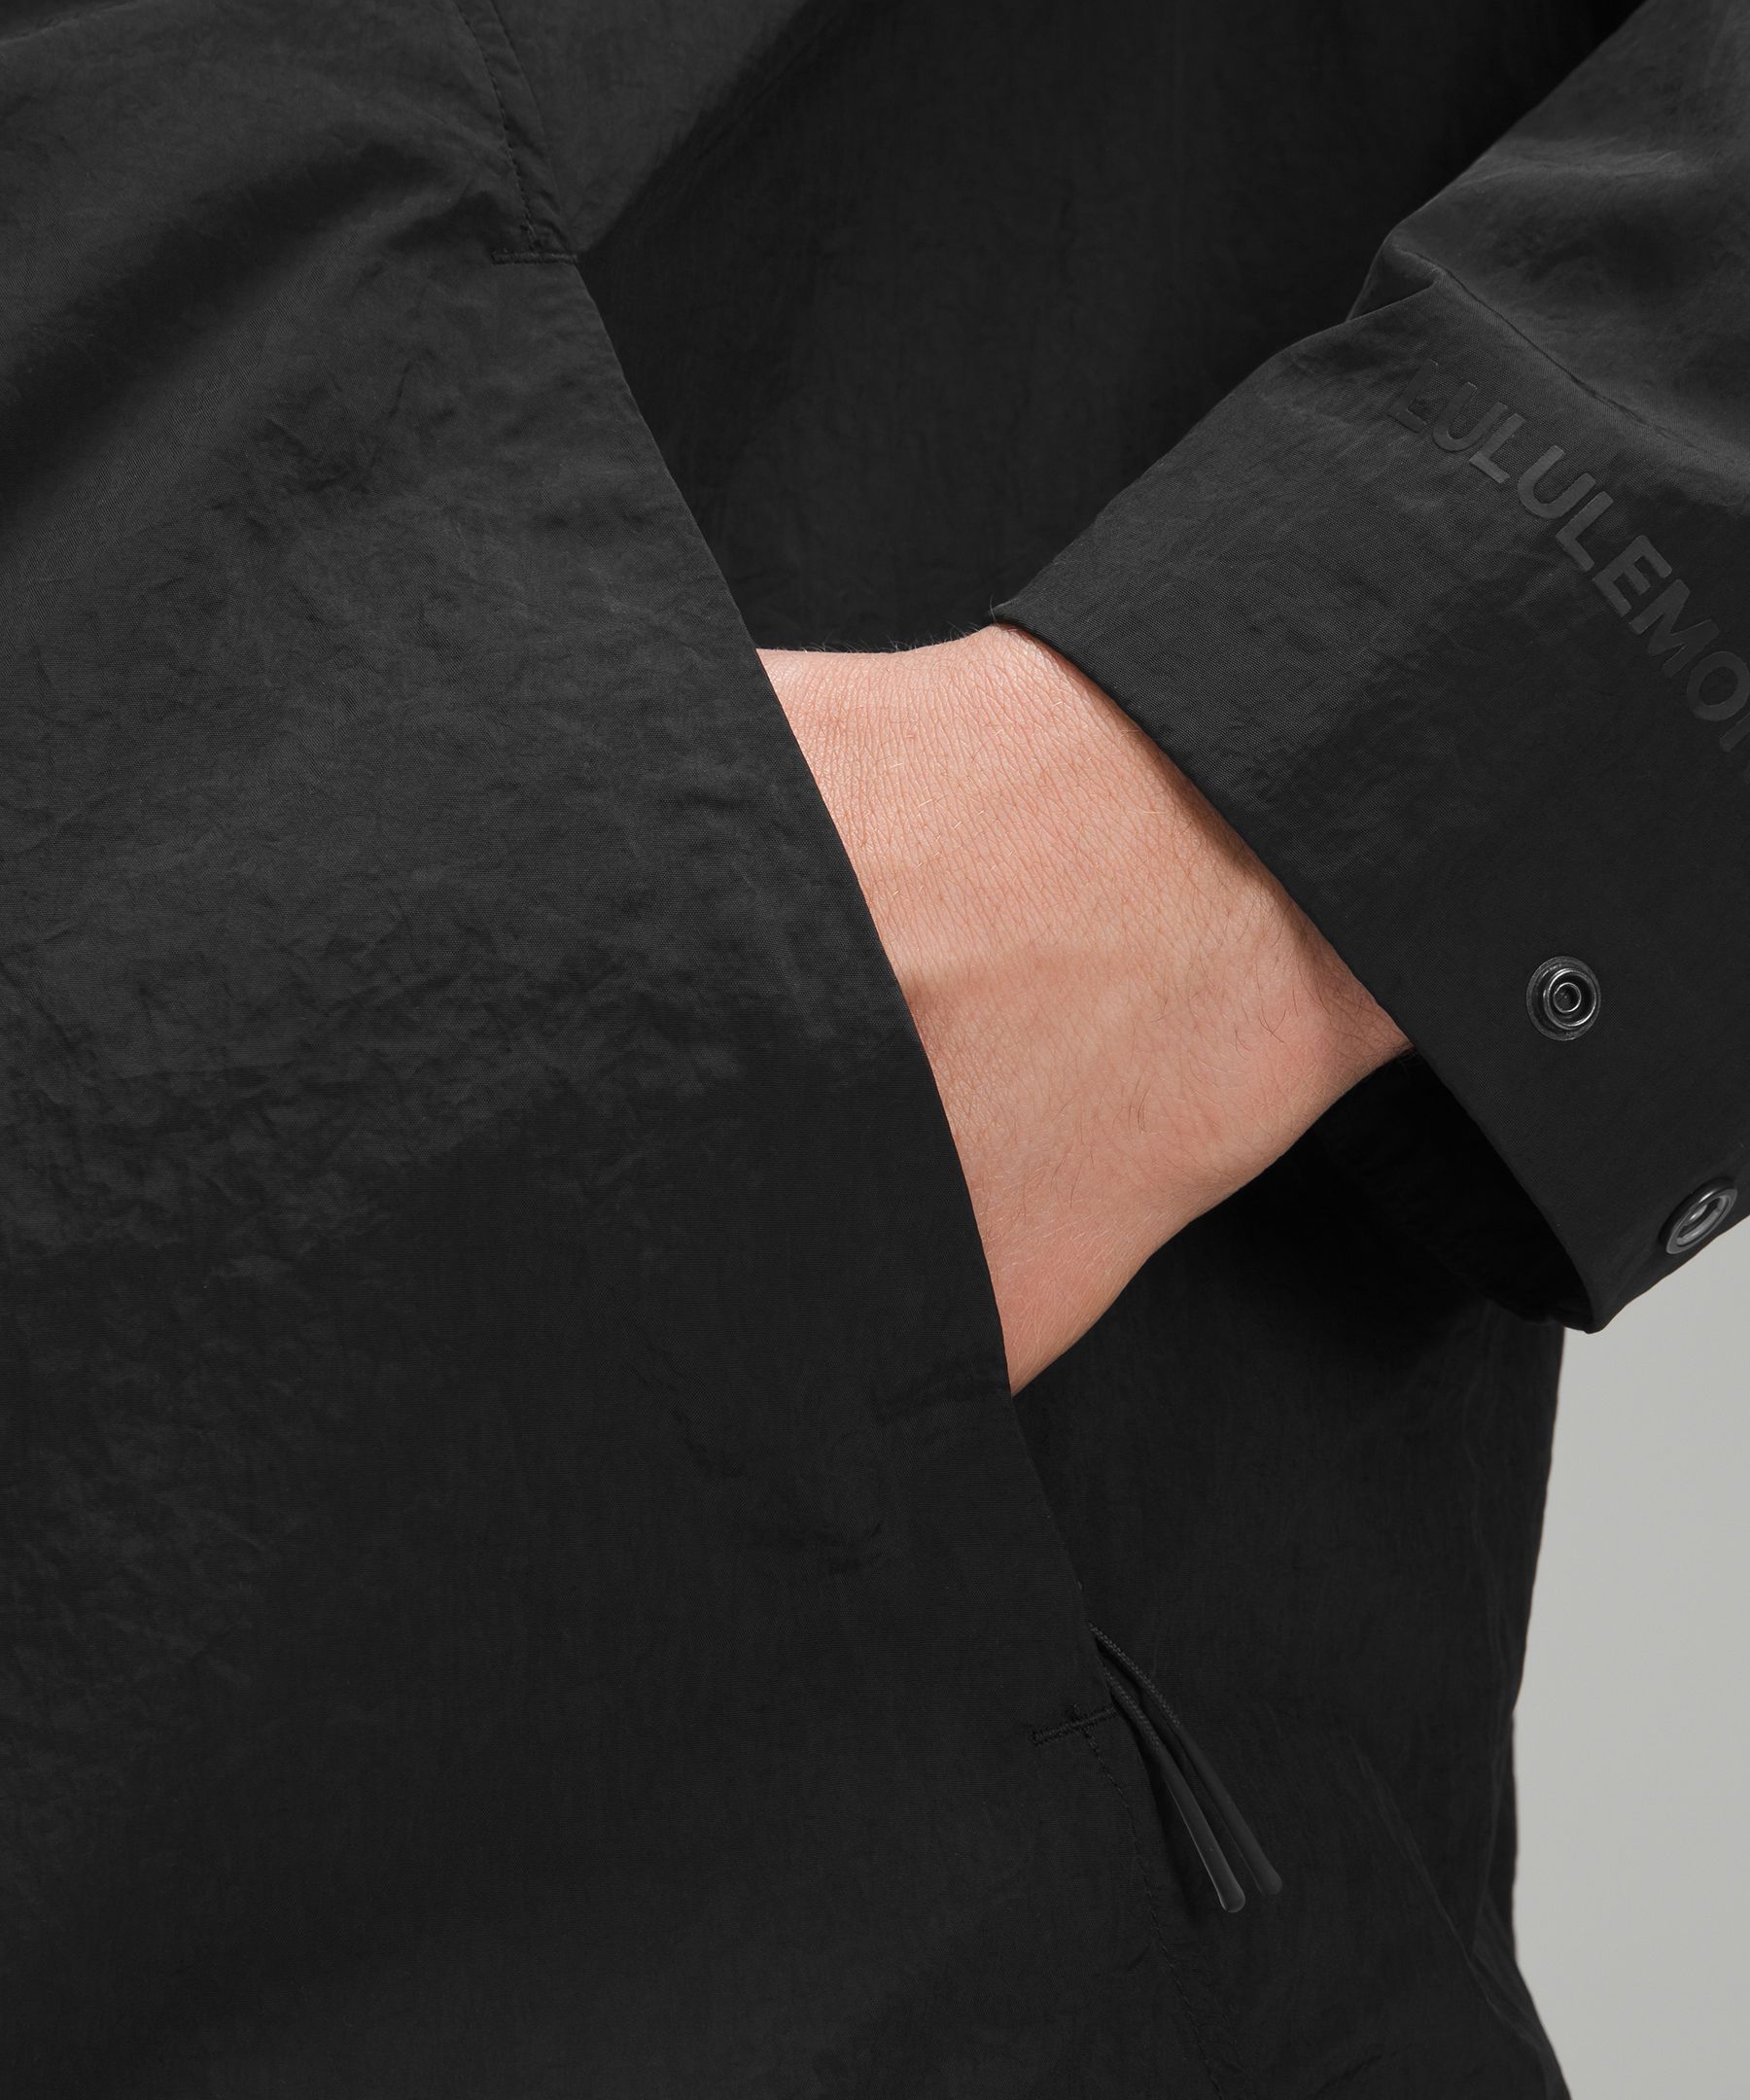 Textured Full-Zip Hooded Jacket | Men's Coats & Jackets